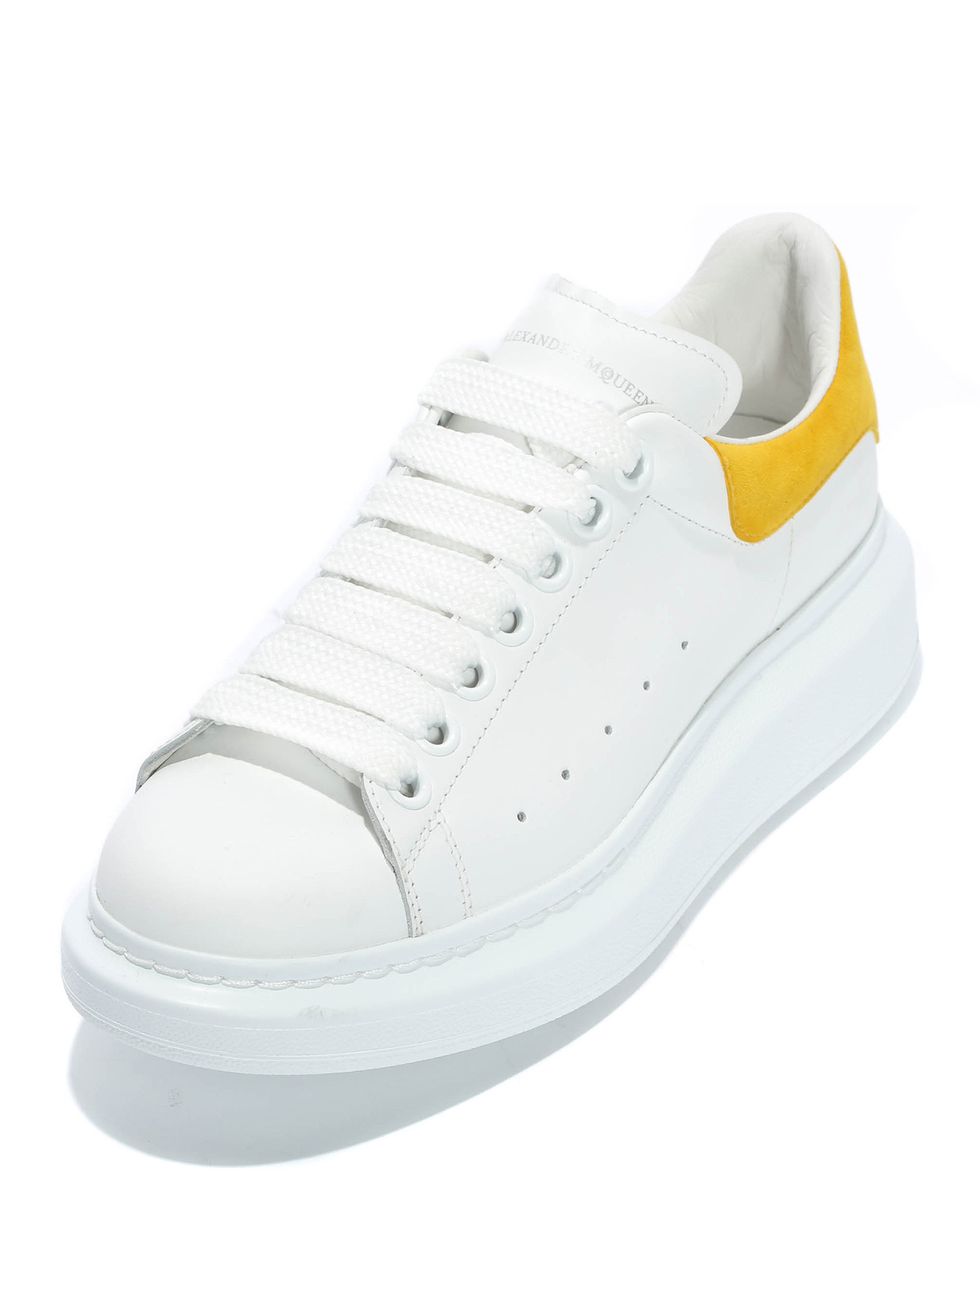 Shoe, Footwear, White, Sneakers, Product, Skate shoe, Walking shoe, Plimsoll shoe, Athletic shoe, Tennis shoe, 